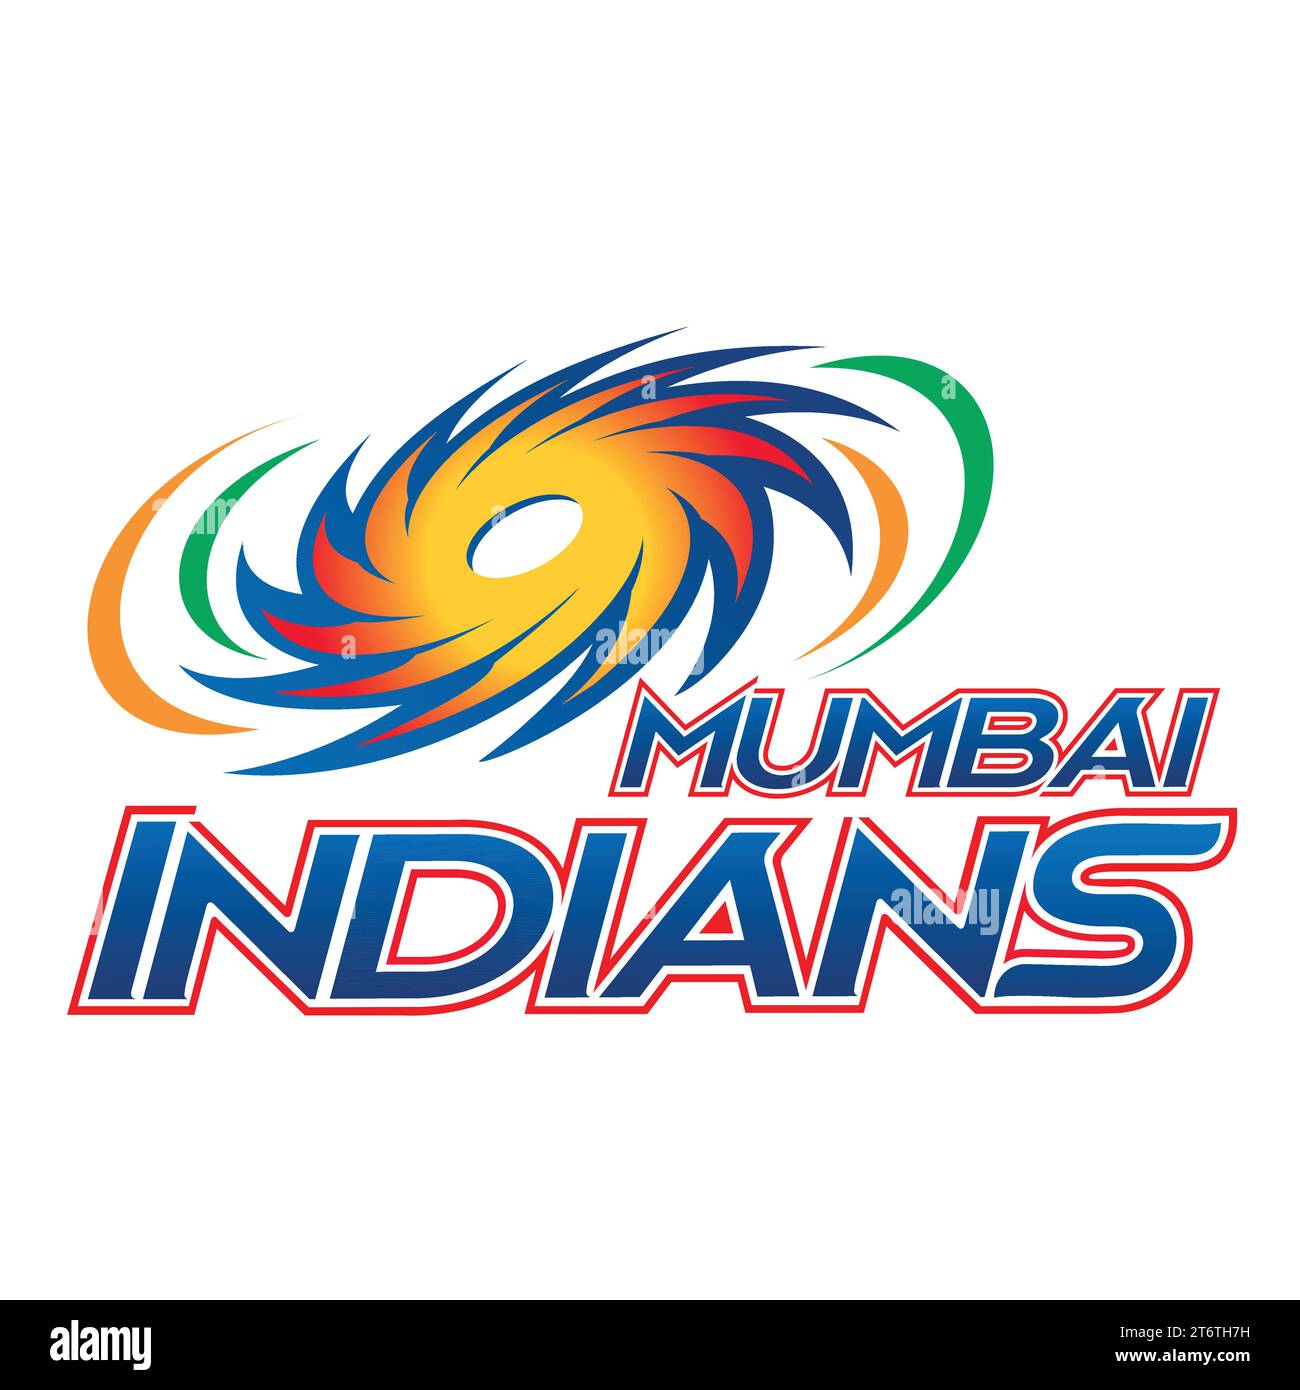 Mumbai Indians logo Club de cricket professionnel indien, Illustration vectorielle Abstract image modifiable Illustration de Vecteur